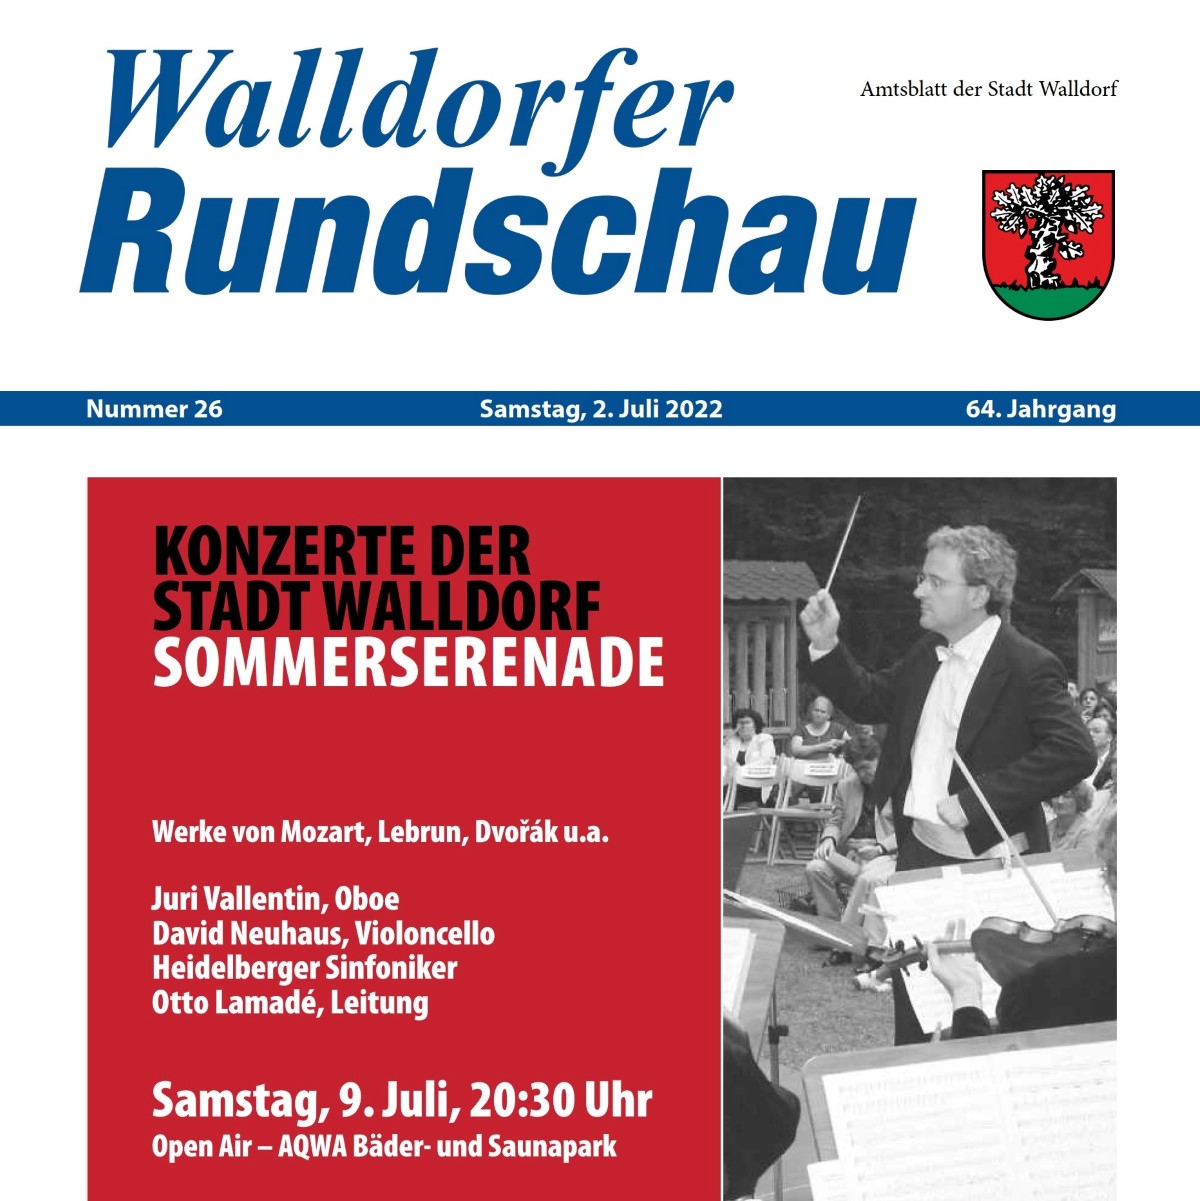 Die Walldorfer Rundschau 2022 Nr. 26 | Bildschirmabgriff der PDF-Version